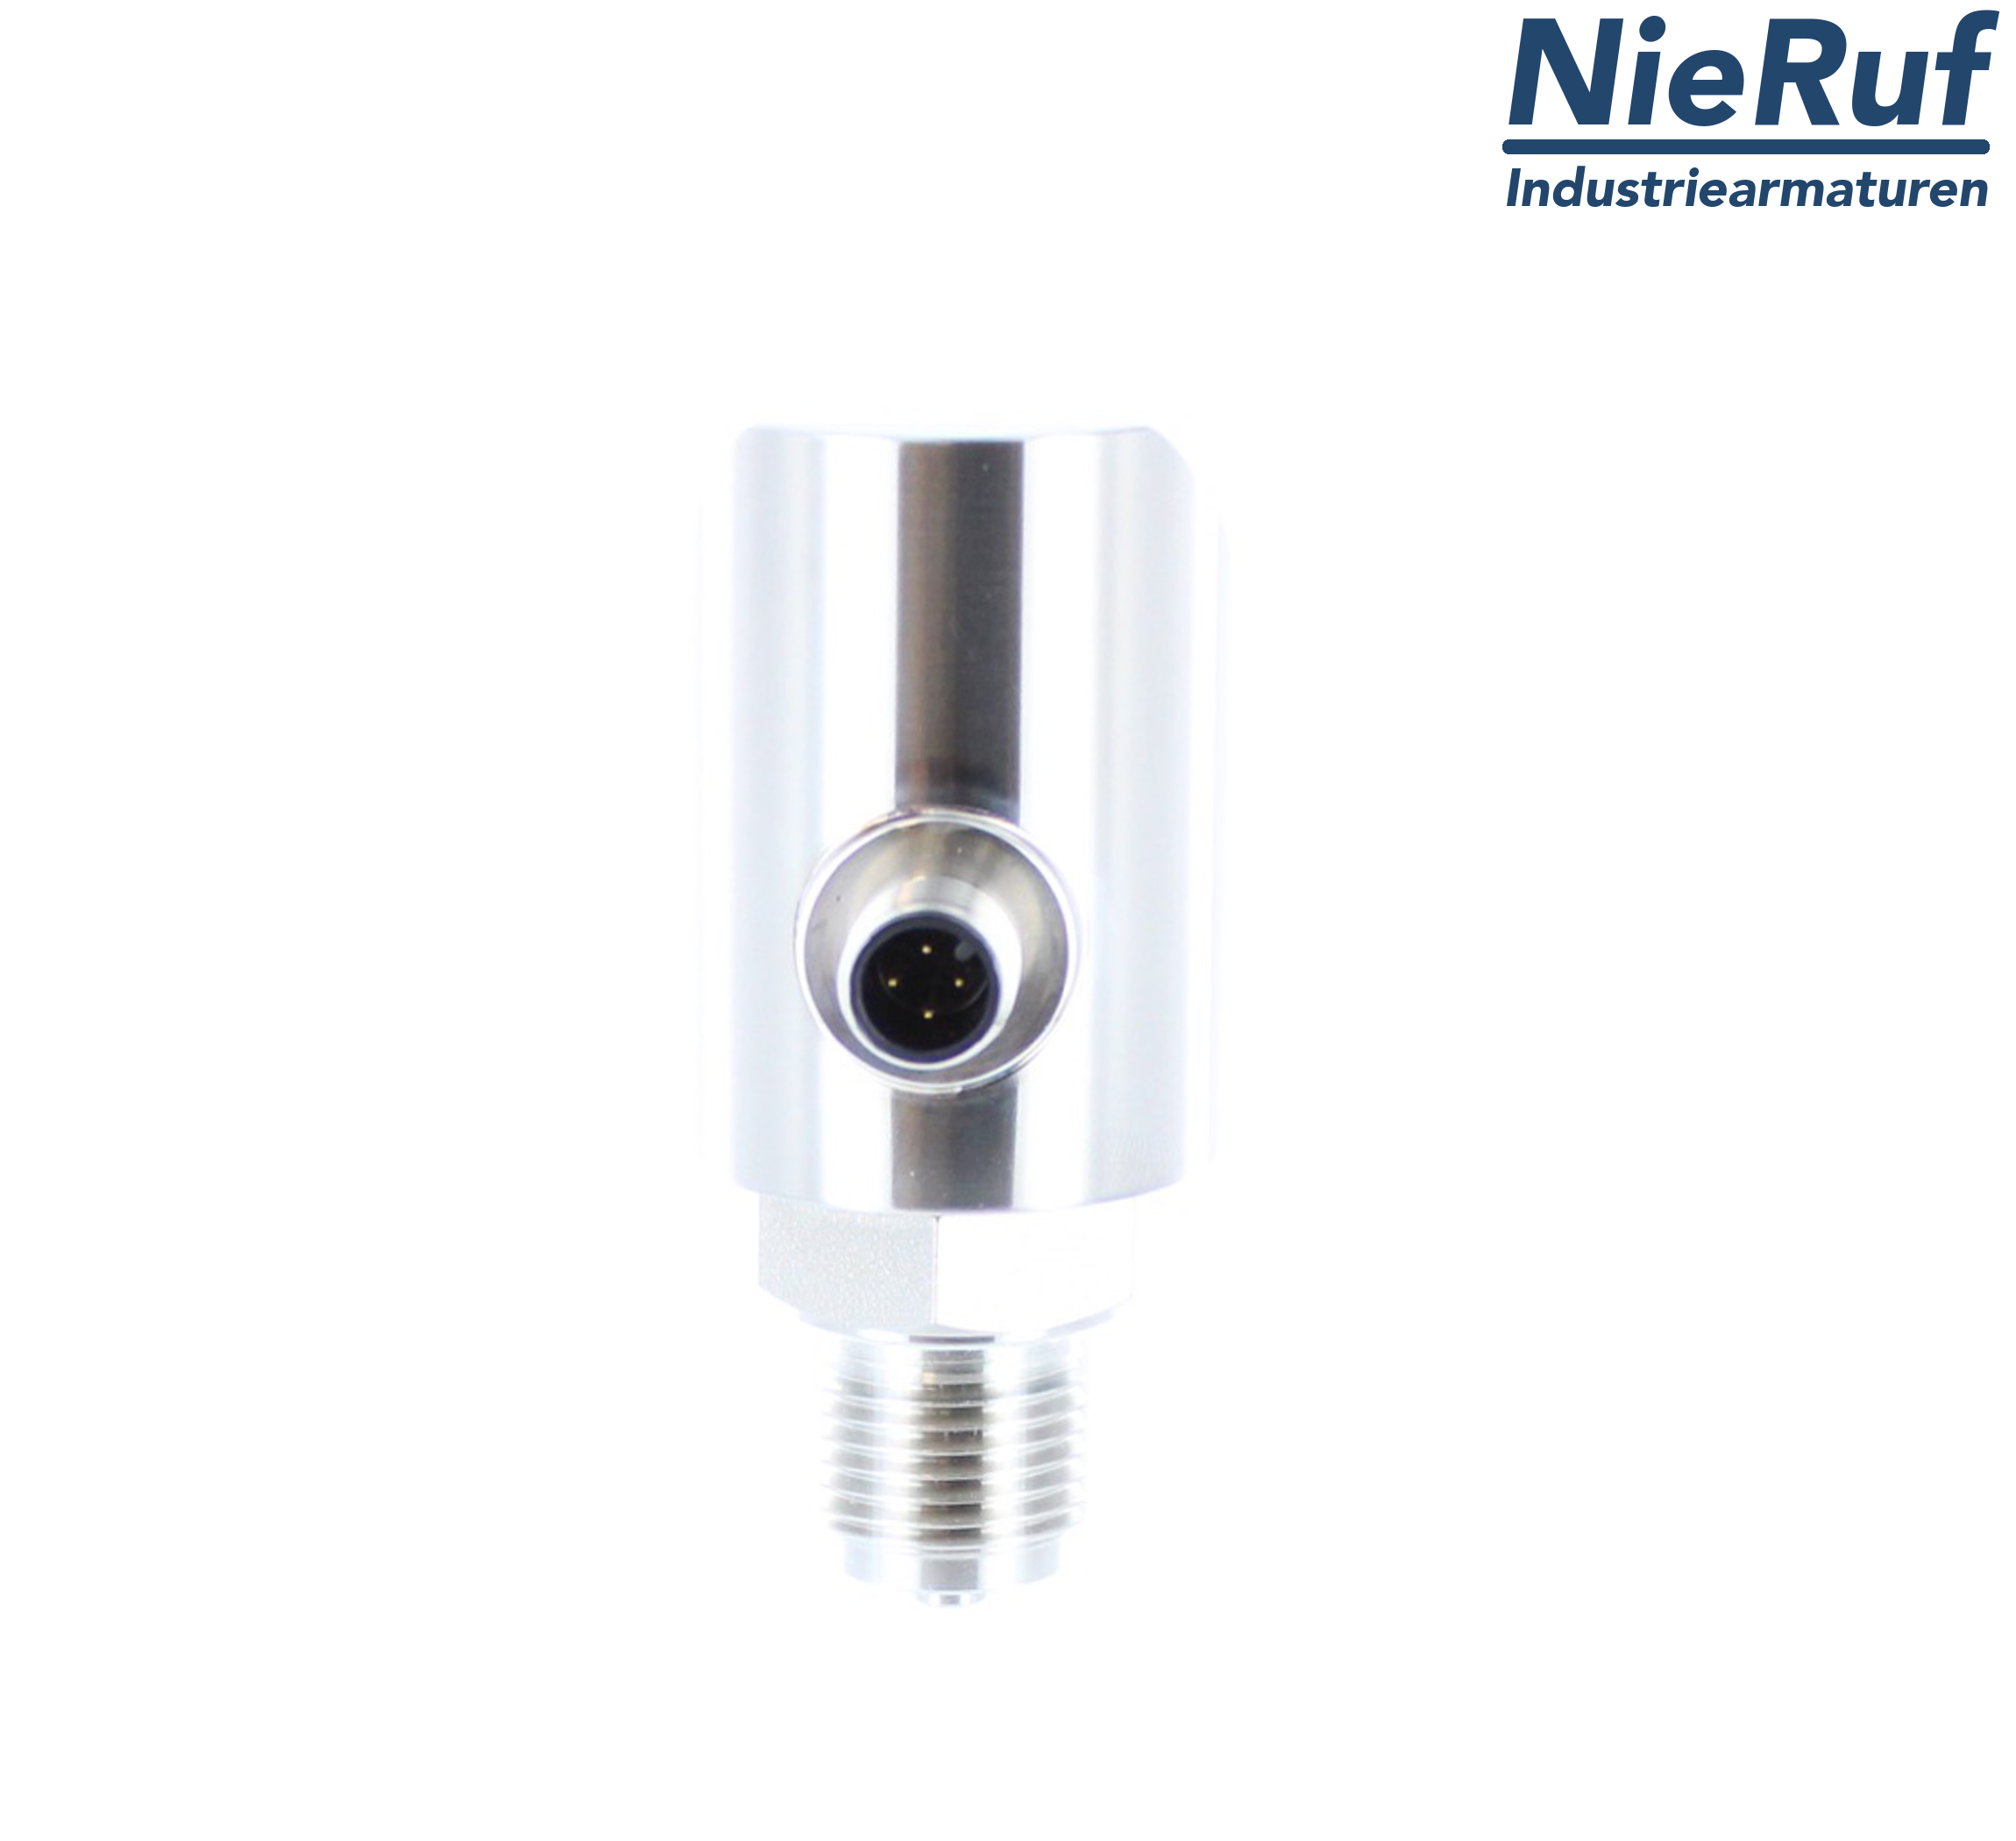 digital pressure sensor G 1/2" B IB 5-wire: 2xPNP, 1x4 - 20mA FPM 0,0 - 600,0 bar